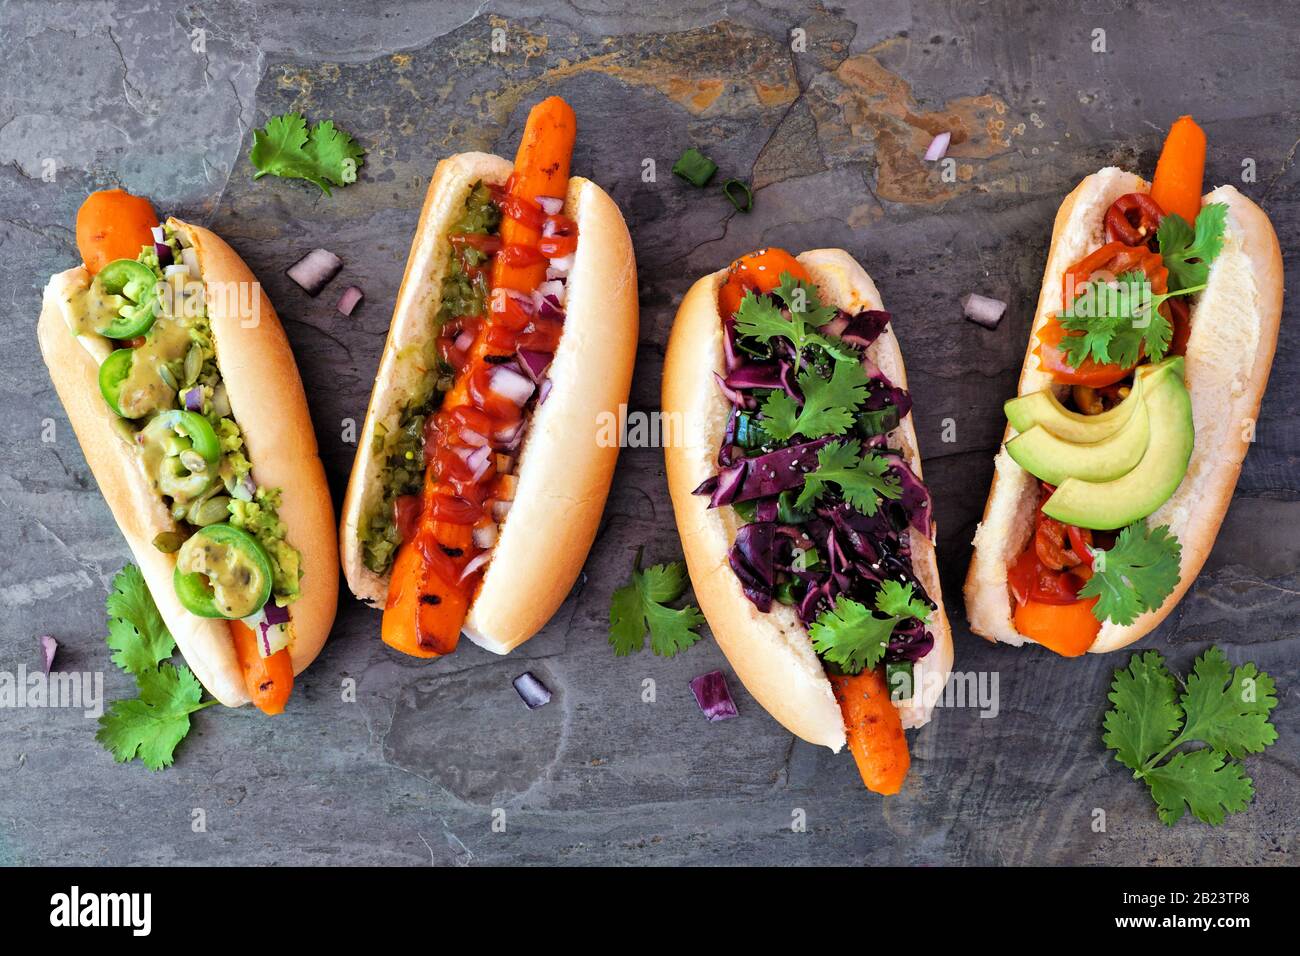 Karotten vegane Hot Dogs mit verschiedenen Belägen. Über der Bildfläche auf dunklem Schieferhintergrund. Pflanzliches, fleischloses Essenskonzept. Stockfoto